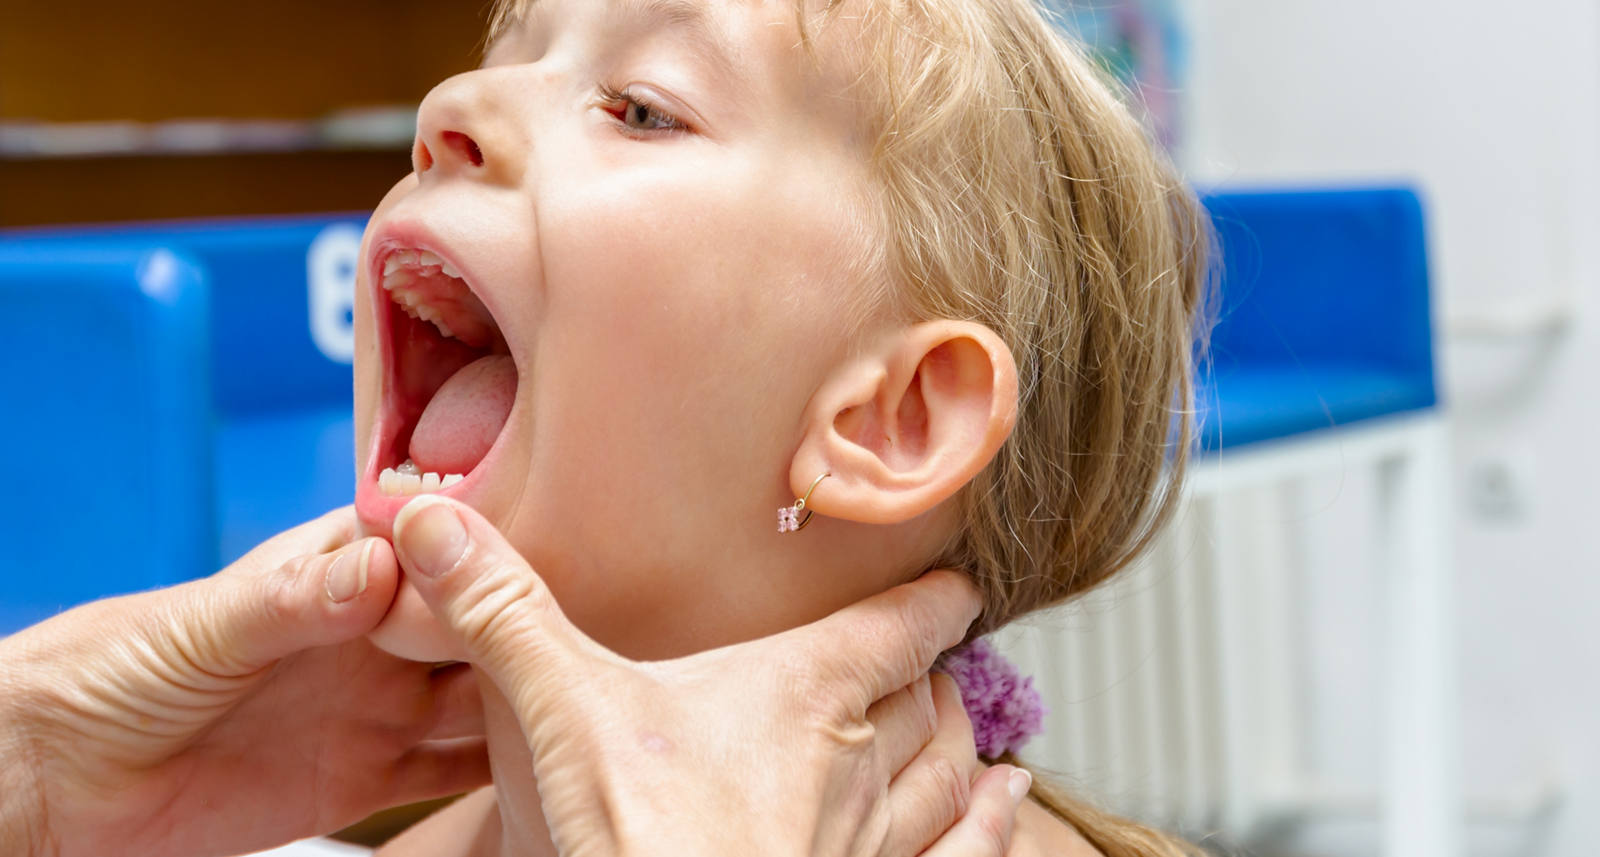 Asportazione delle tonsille: quando è indicata?